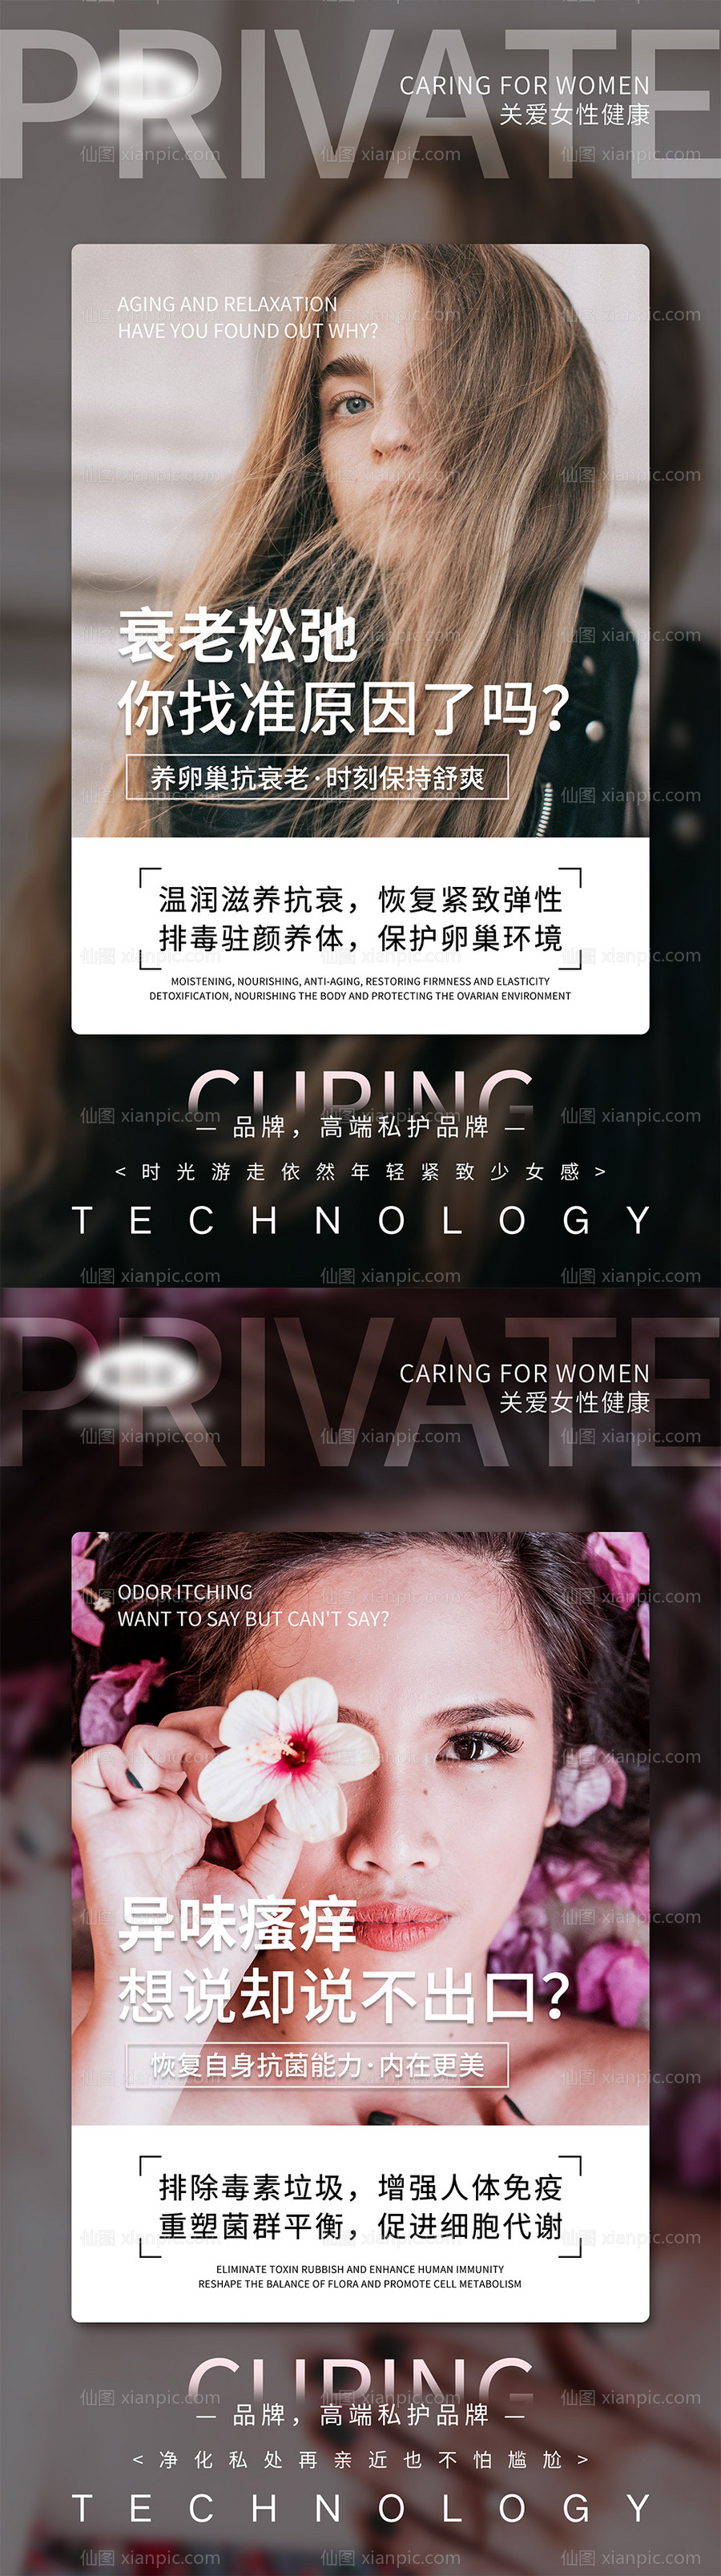 素材乐-女性私密宣传系列海报